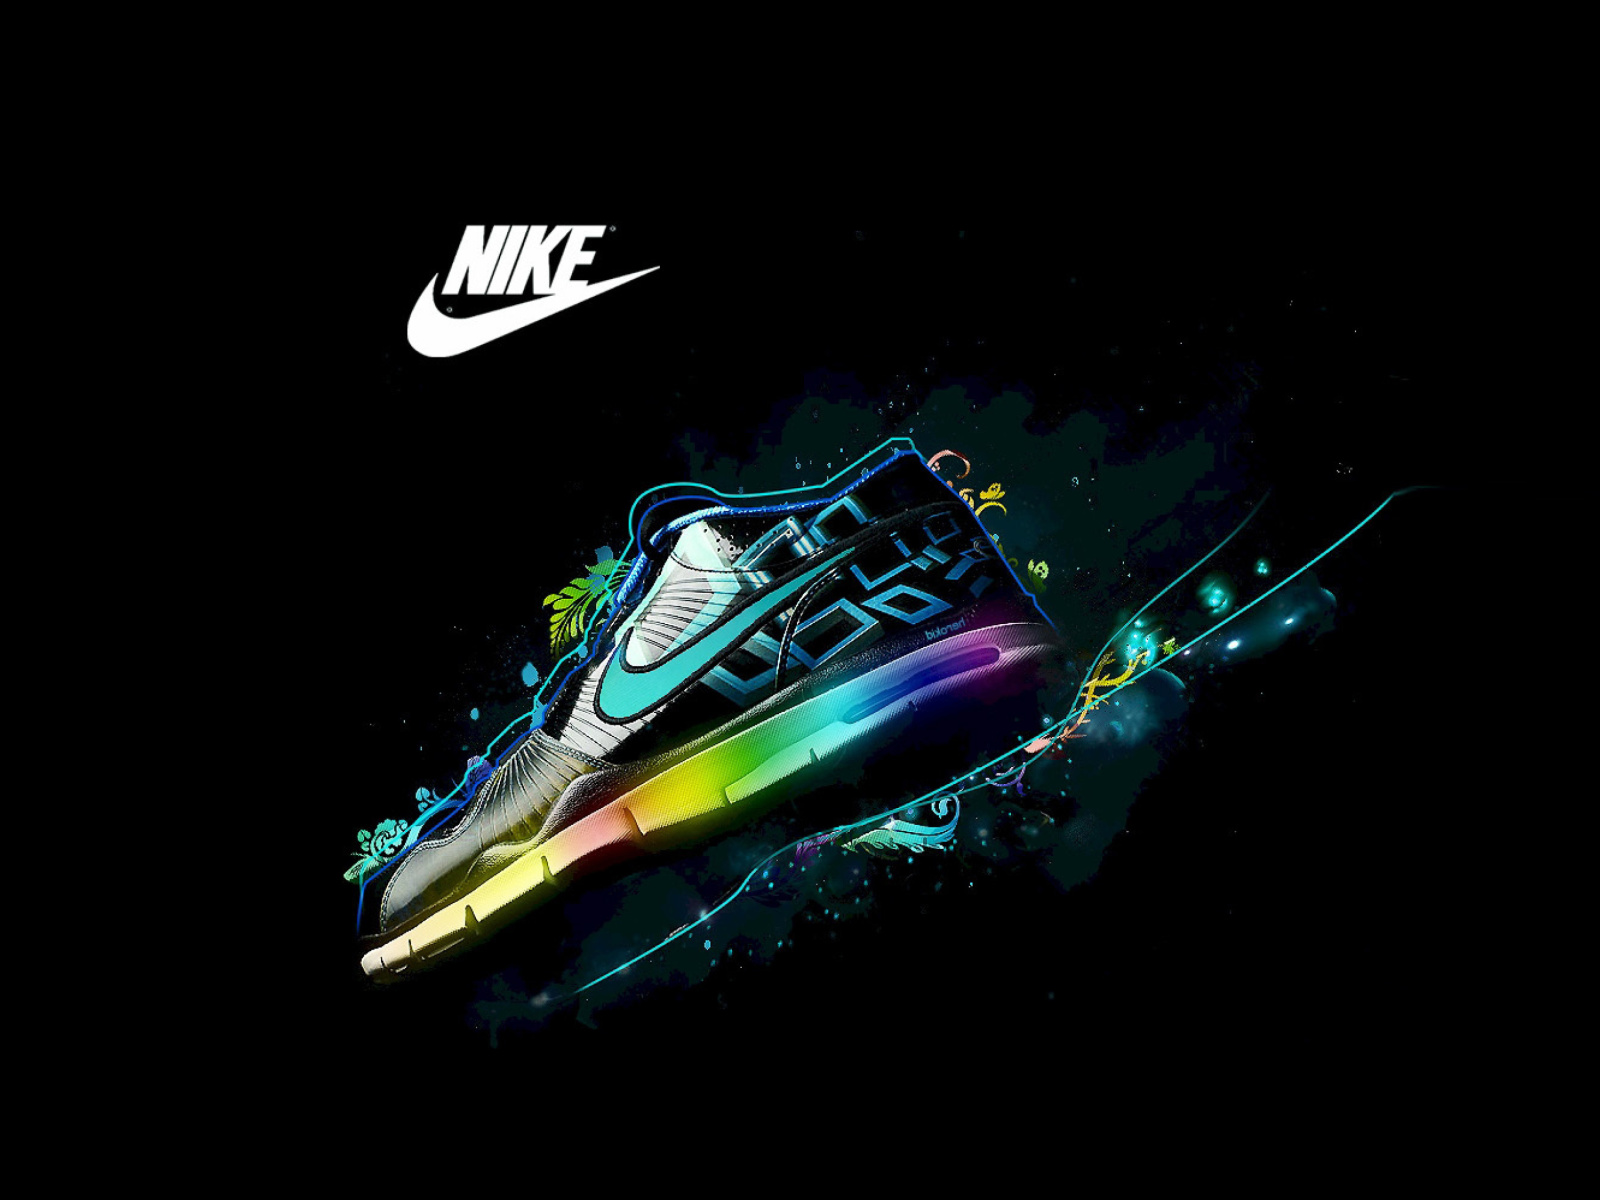 Das Nike Logo and Nike Air Shoes Wallpaper 1600x1200